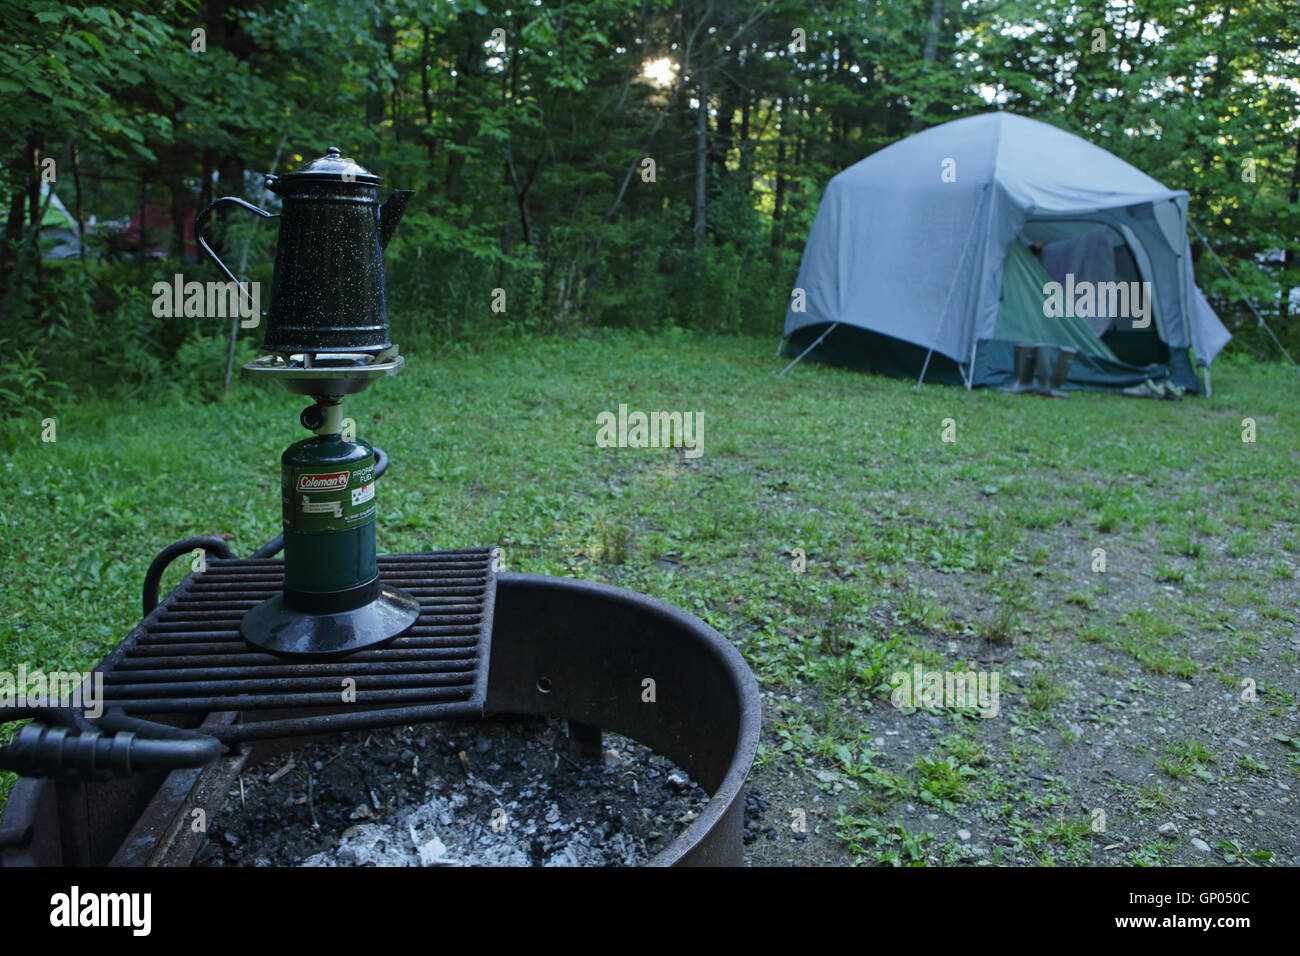 Woodford State Park in den grünen Bergen des südlichen Vermont, USA. Große Familienbetriebs Zelt aufgestellt auf einem Campingplatz an einem sonnigen Sommertag Stockfoto